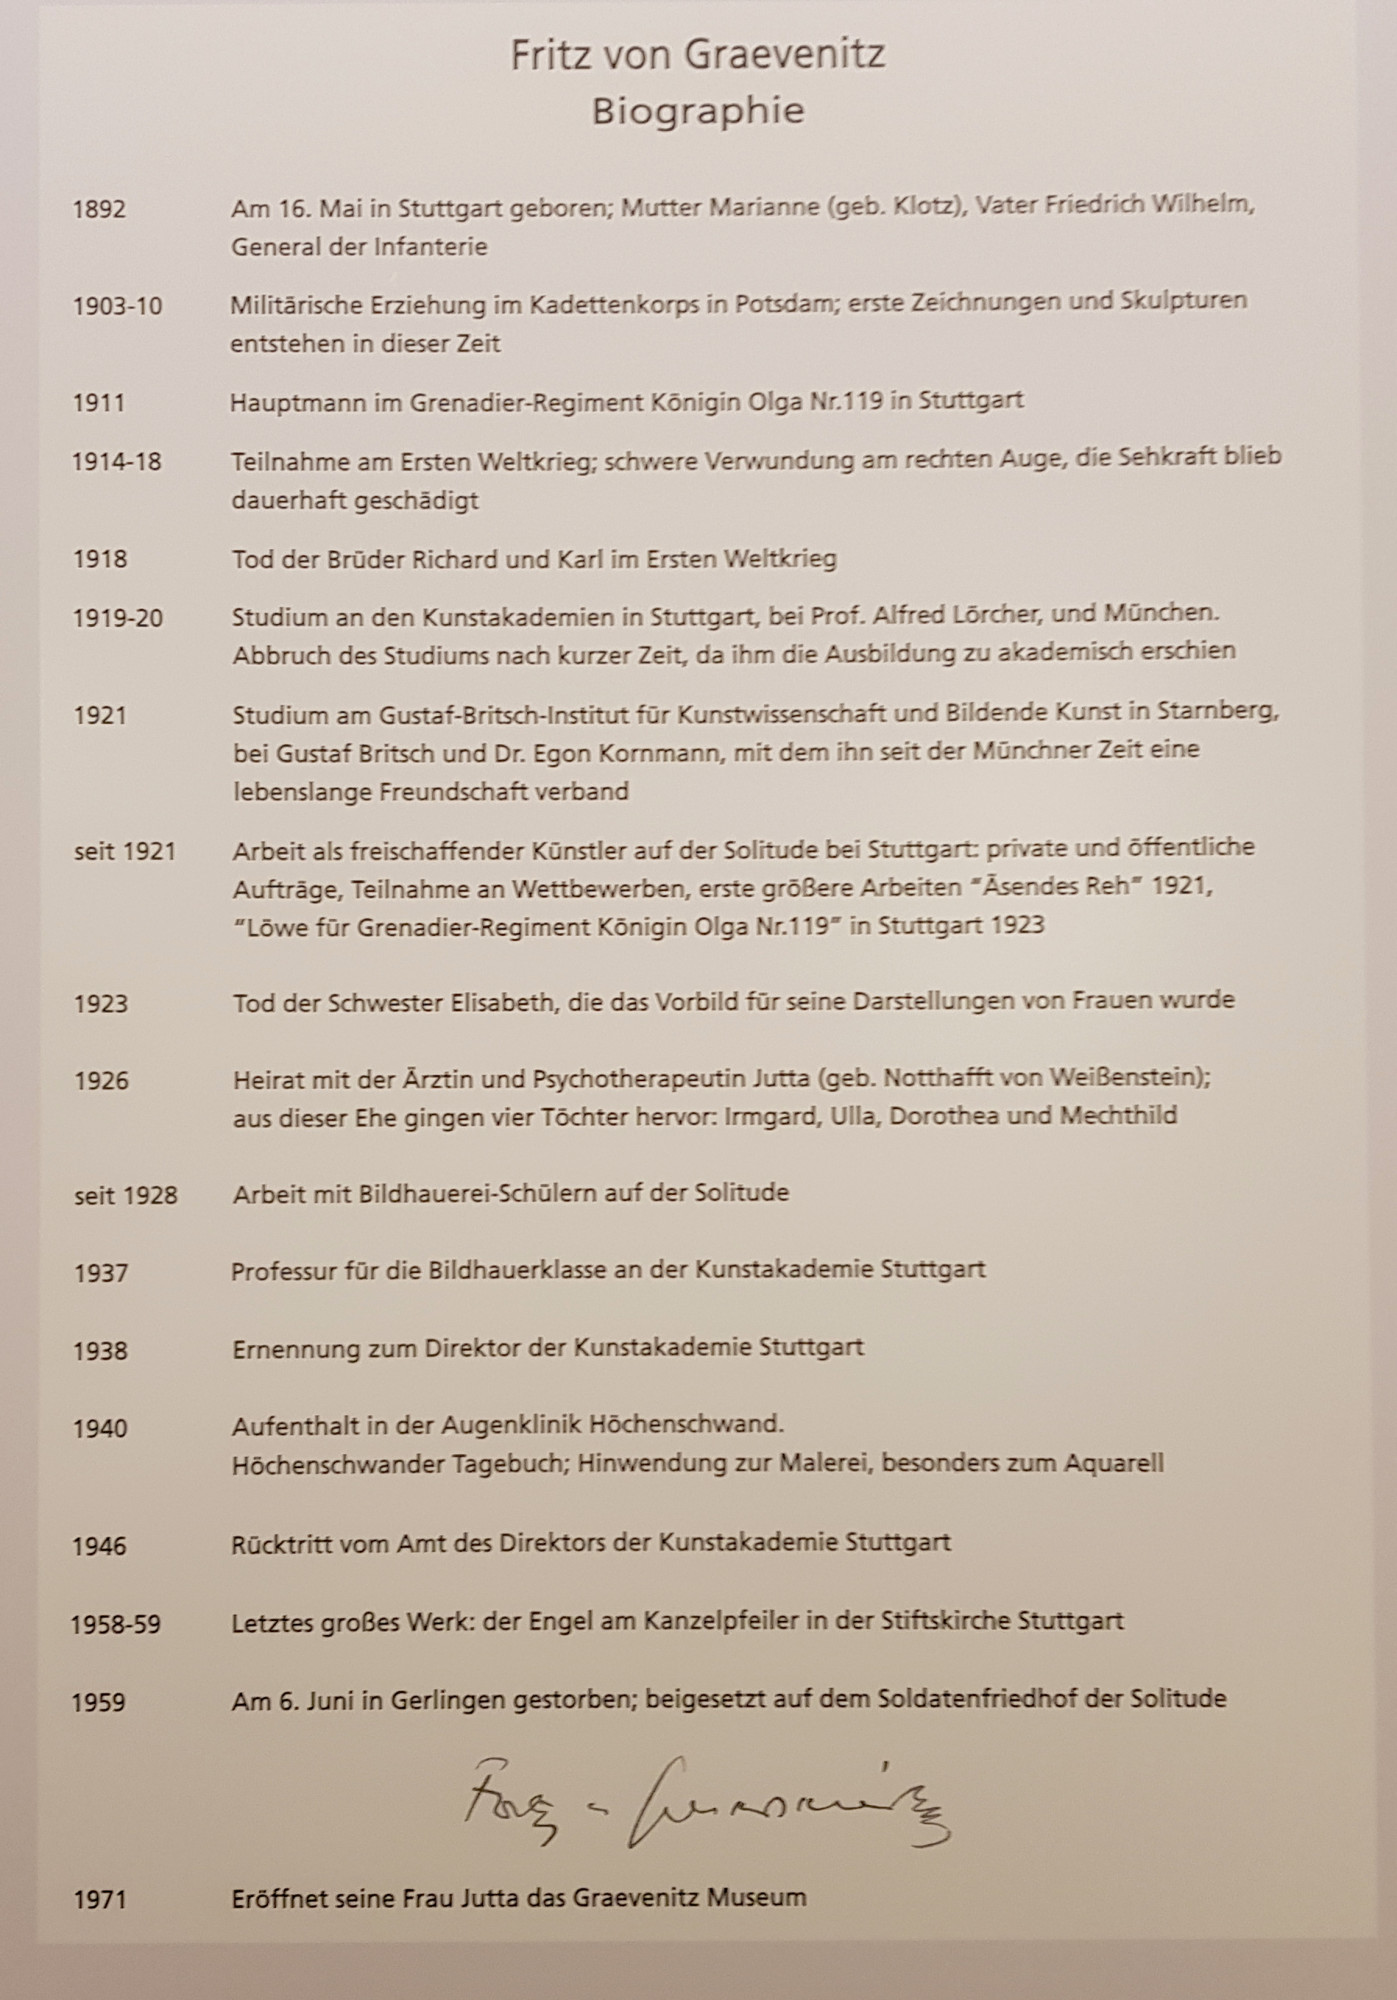 Biography of Fritz von Graevenitz as displayed at the Graevenitz Museum, Stuttgart.  Photo: Angela Anderson (2020)